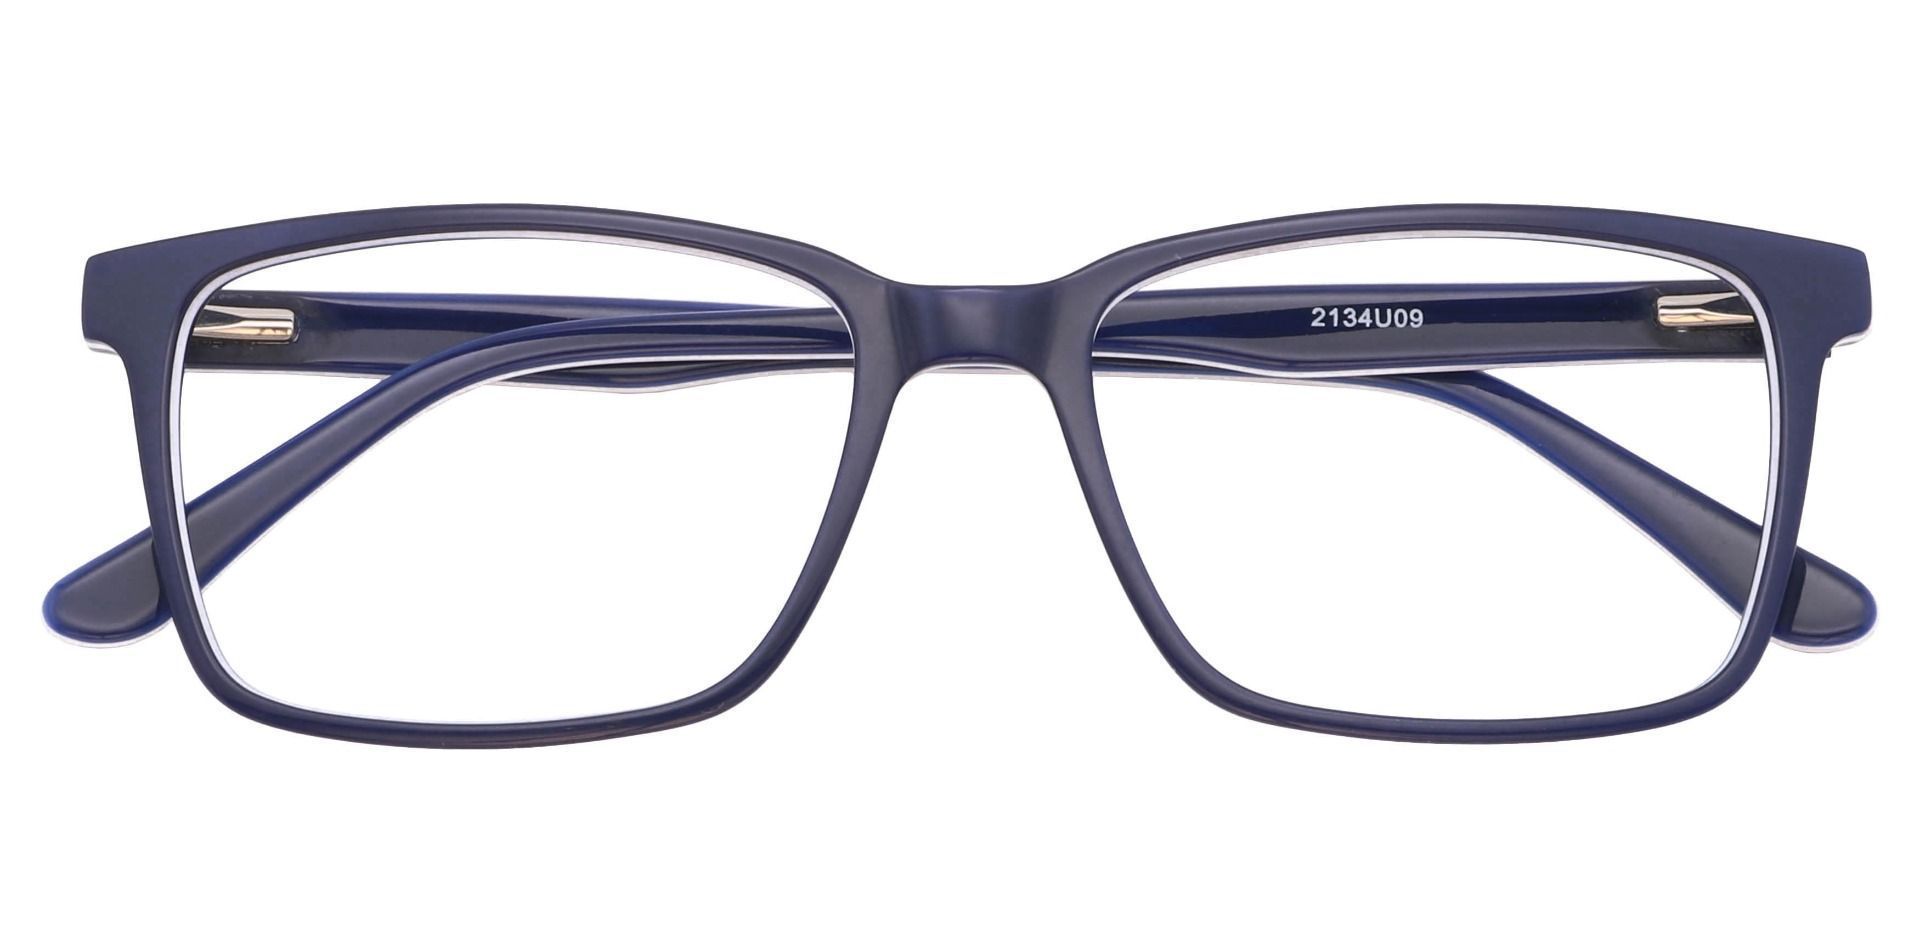 Venice Rectangle Eyeglasses Frame - Navy-white